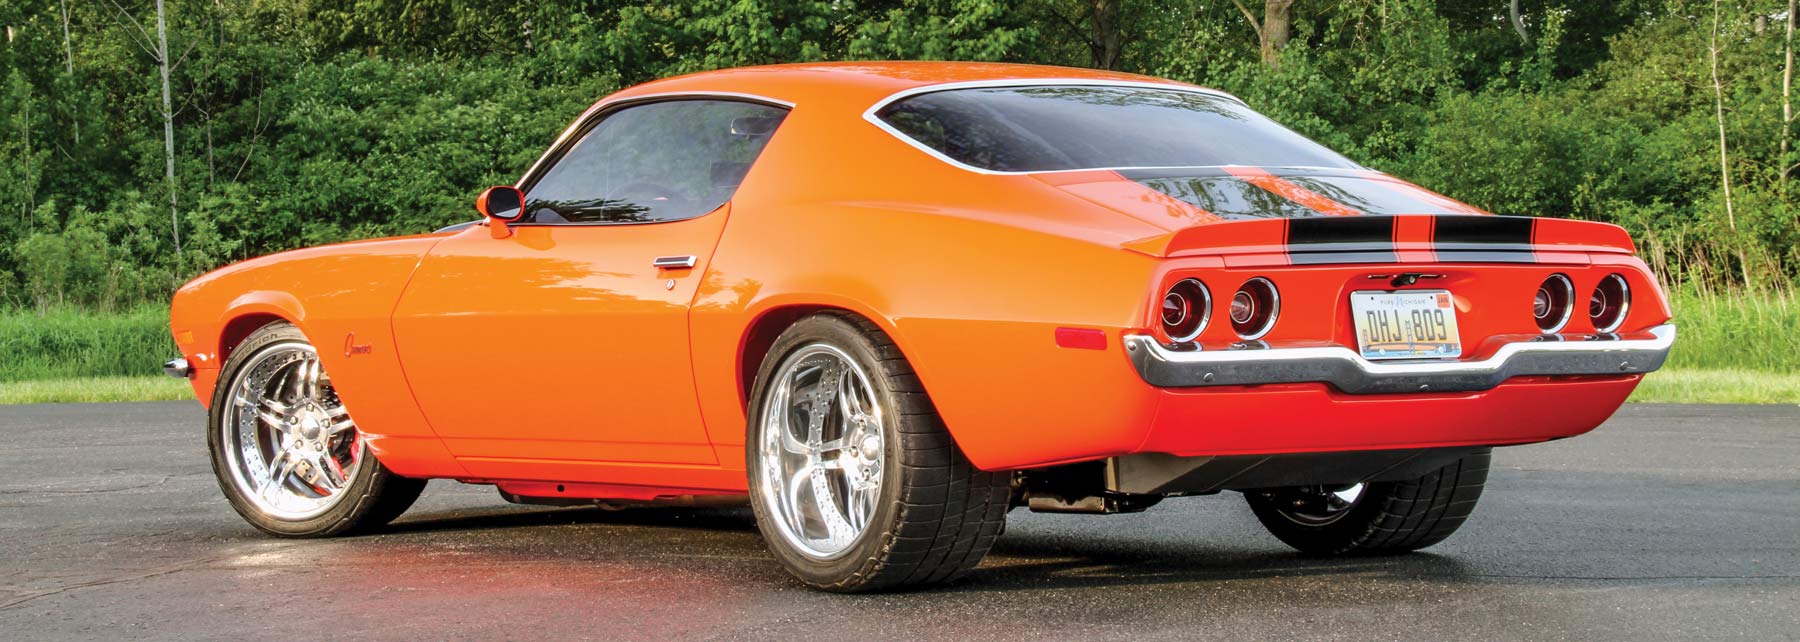 rear of an orange '70 Camaro